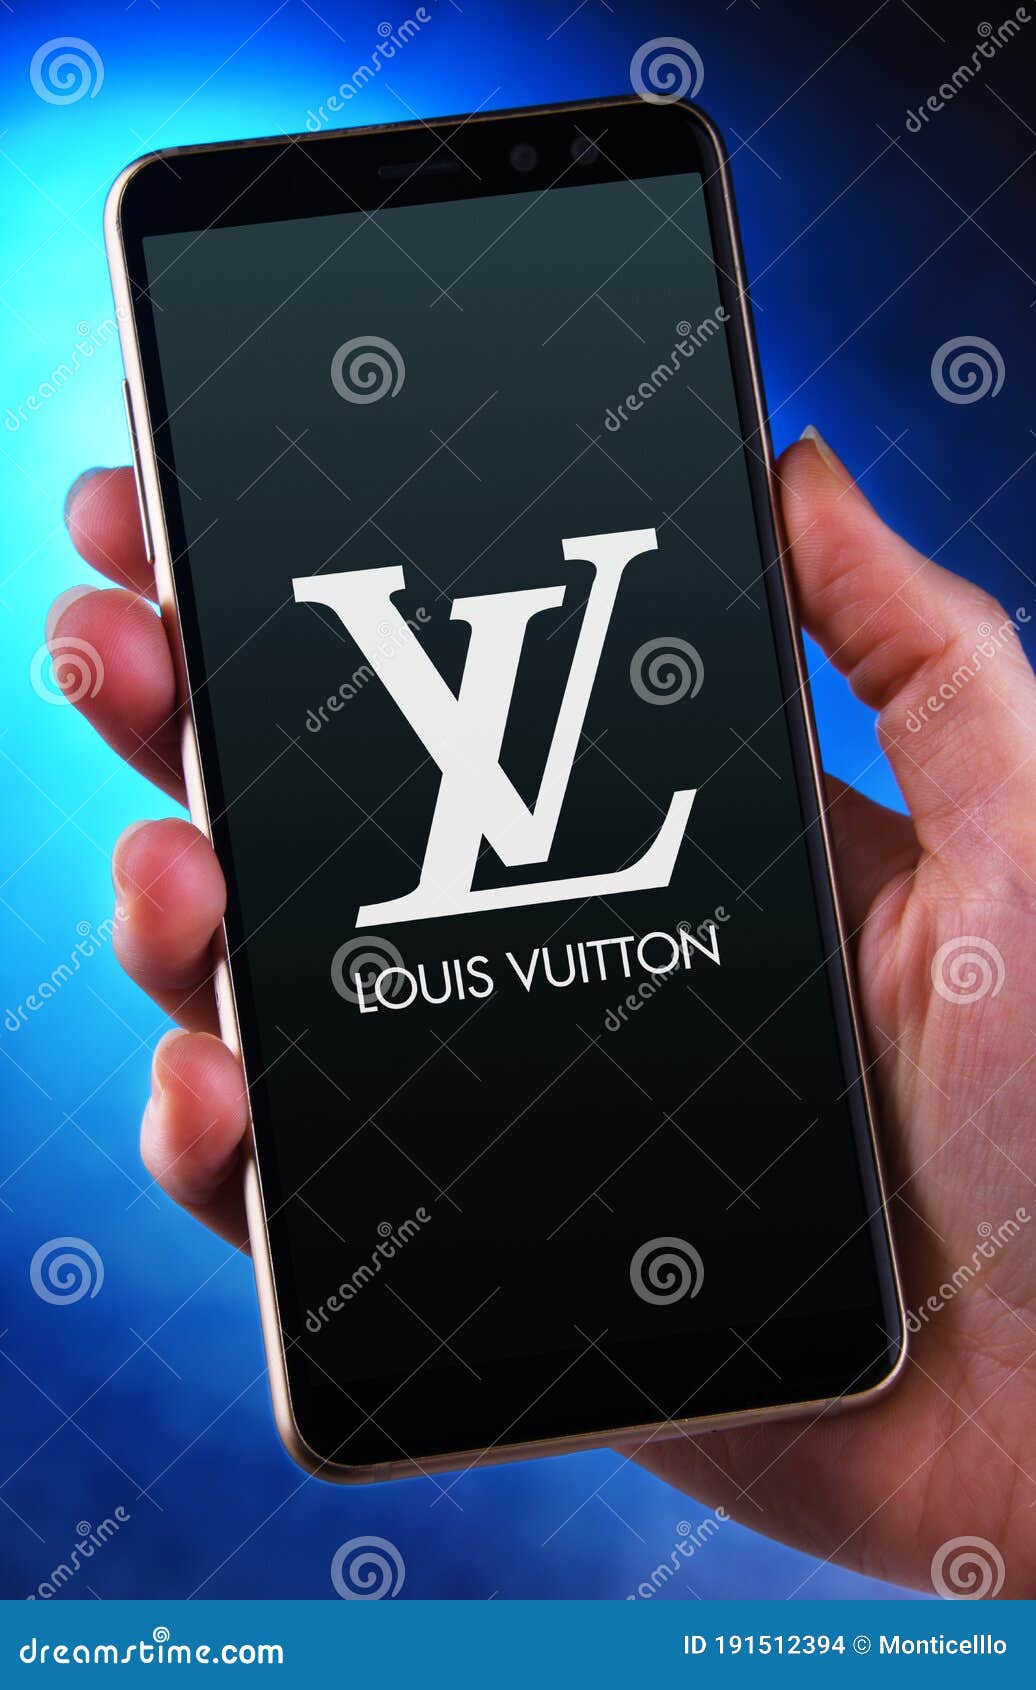 Mano Sujetando El Smartphone Mostrando El Logo De Louis Vuitton Imagen de  archivo editorial - Imagen de minorista, digital: 191512394